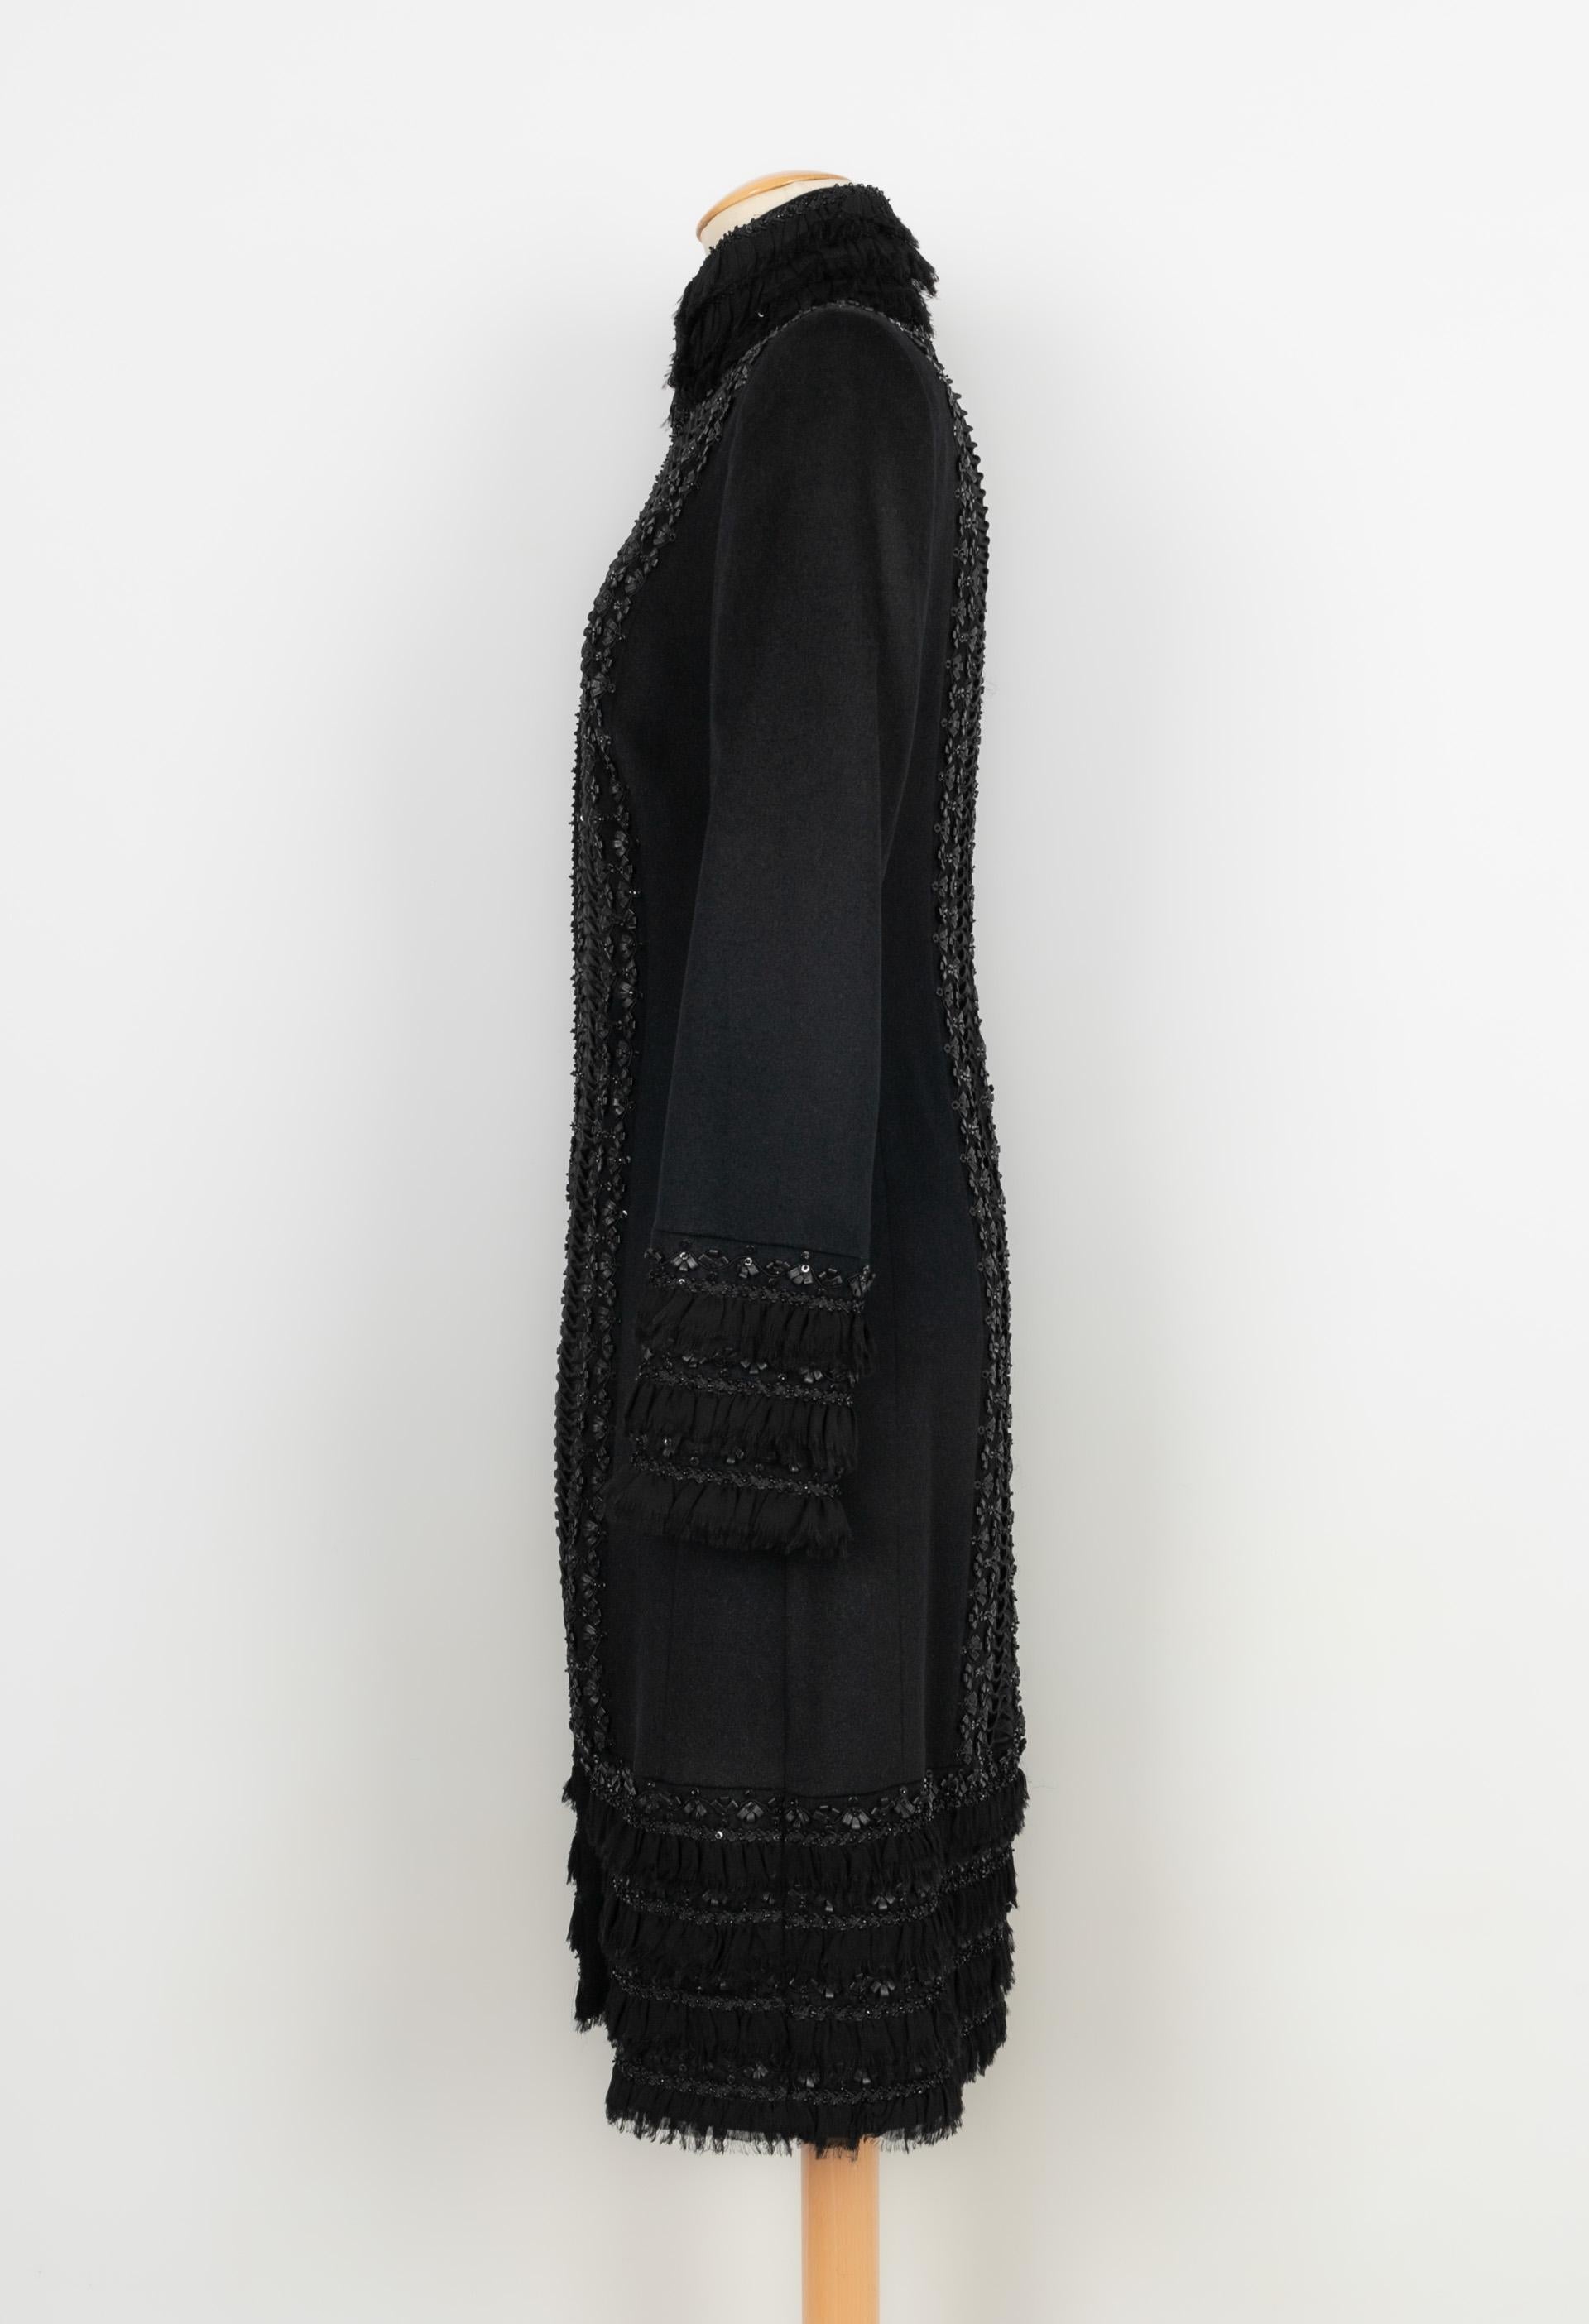 ESCADA - (Made in Germany) Manteau en lapin, laine vierge et cachemire noir orné d'un travail de ruban en cuir et de perles. Taille 36FR.

Condition :
Très bon état

Dimensions :
Largeur d'épaules : 43 cm - Longueur des manches : 60 cm - Longueur :